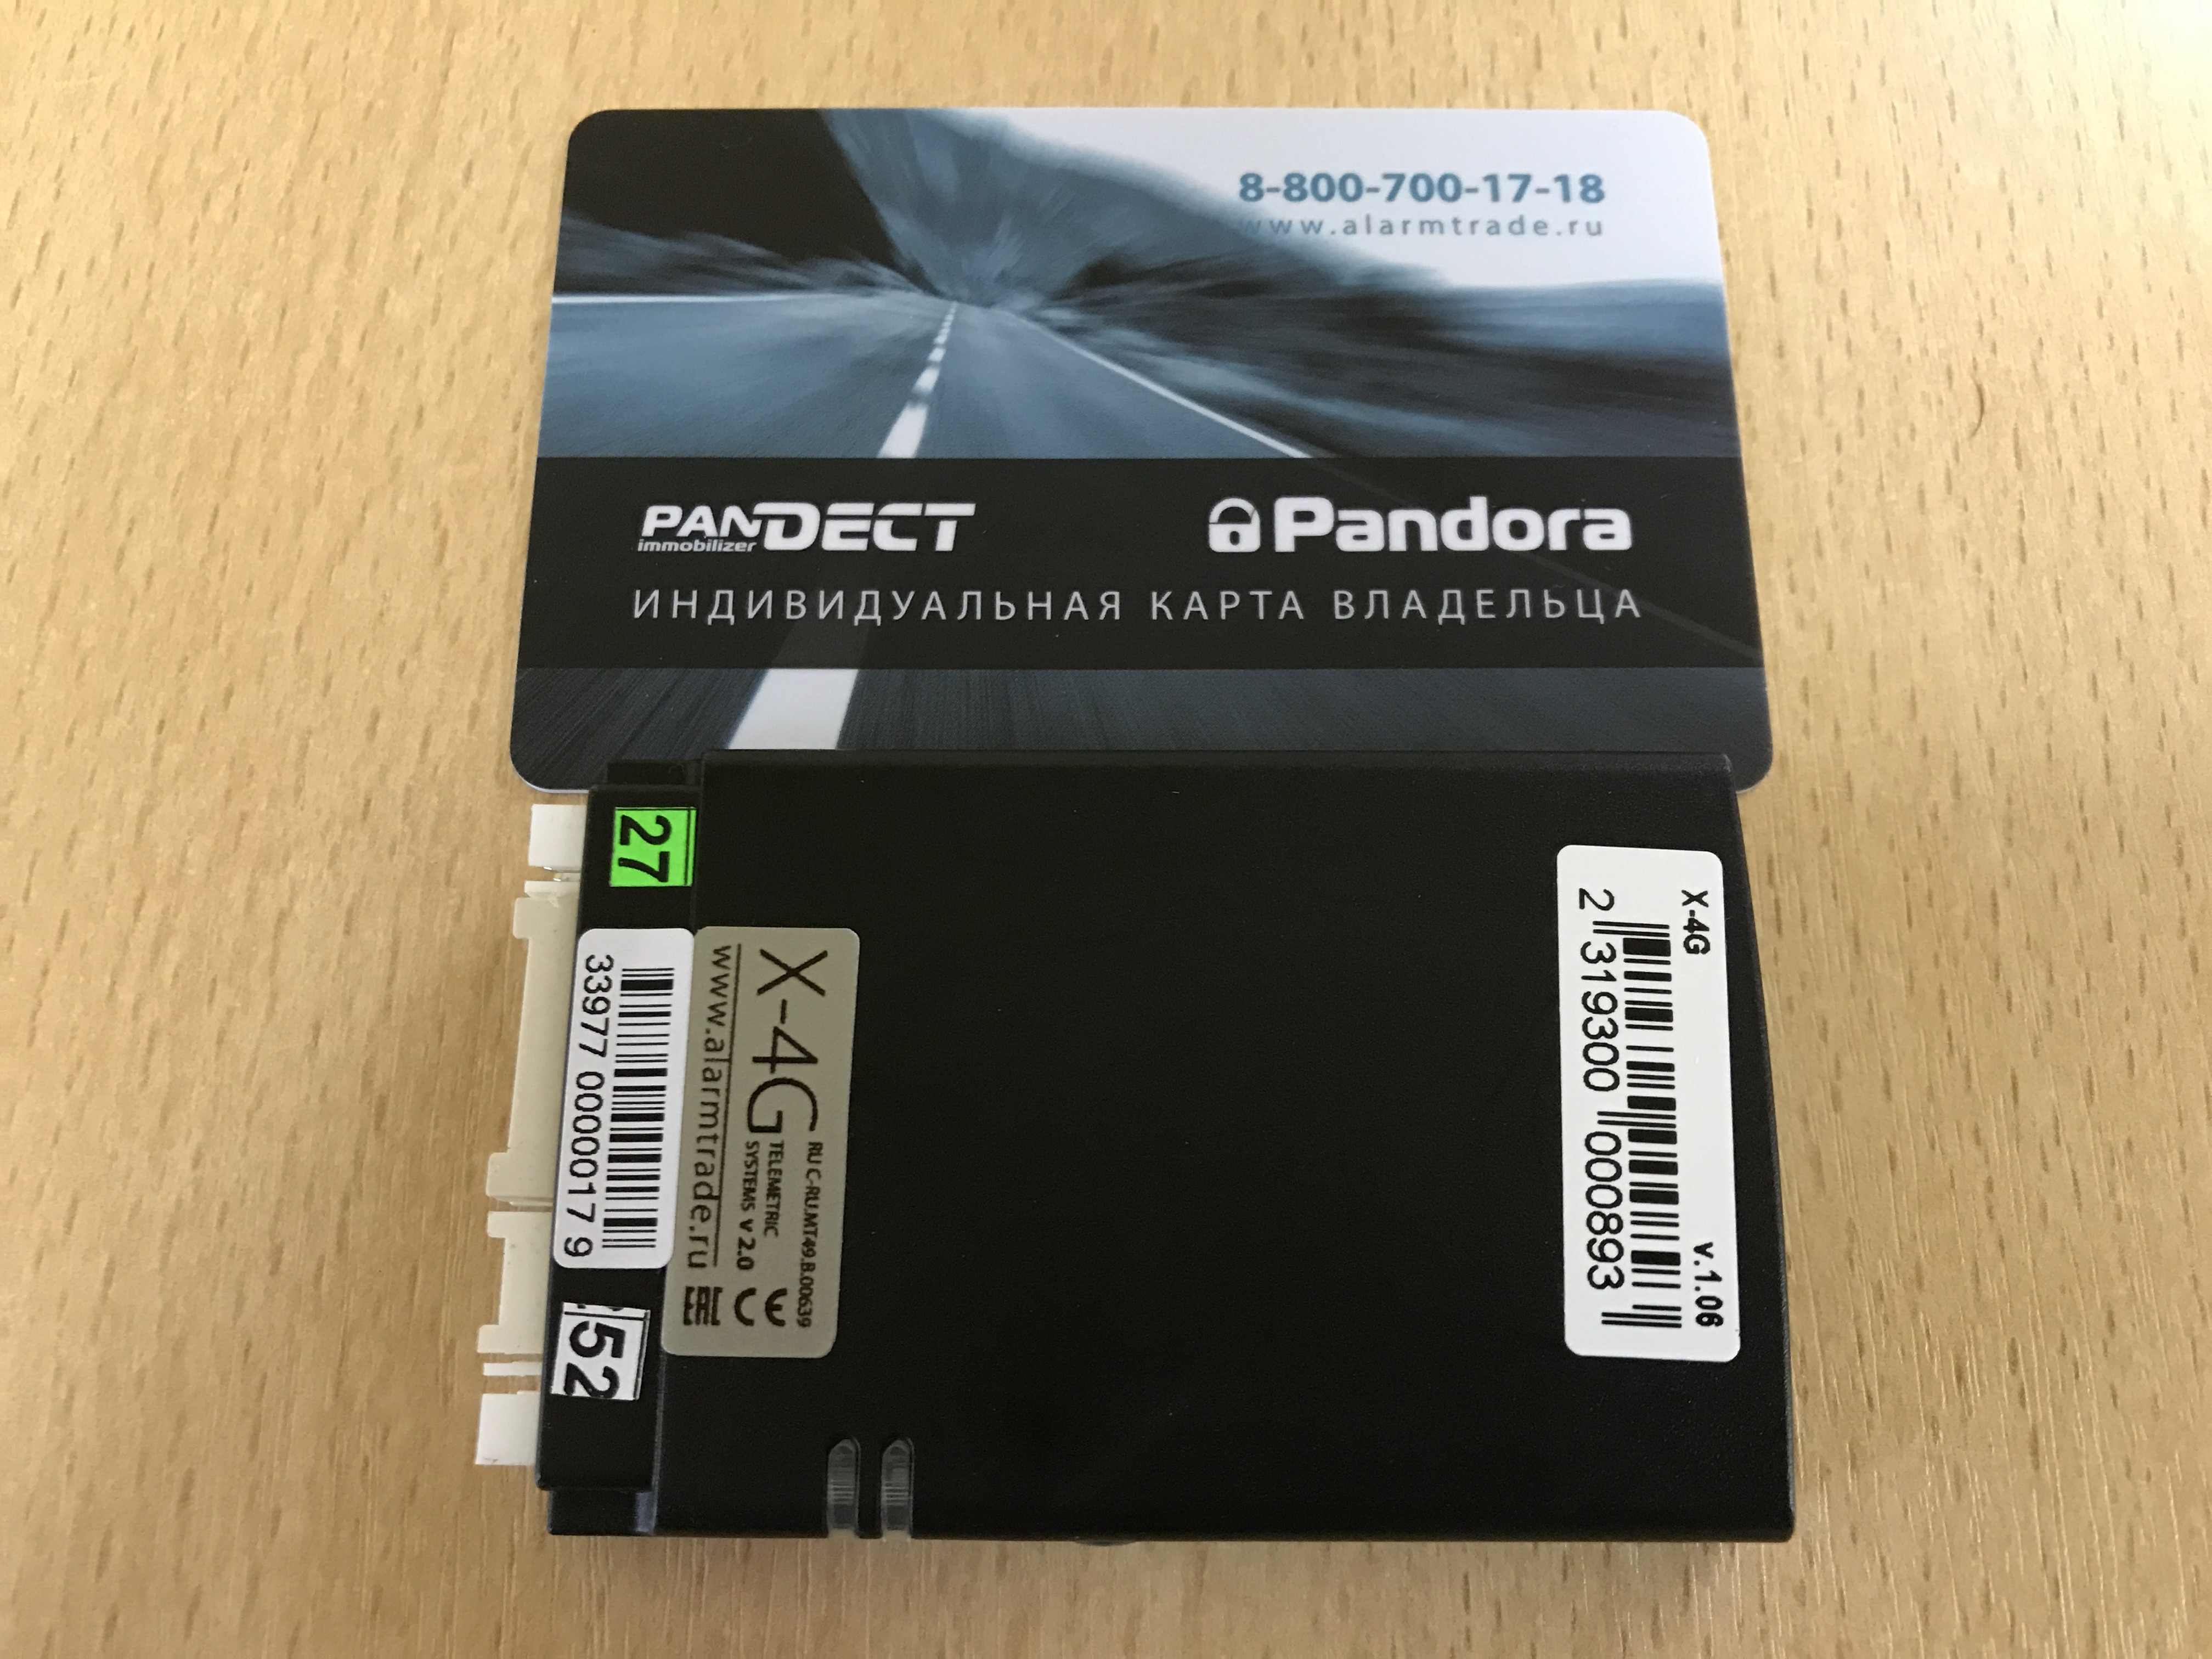 Pandora X-4G